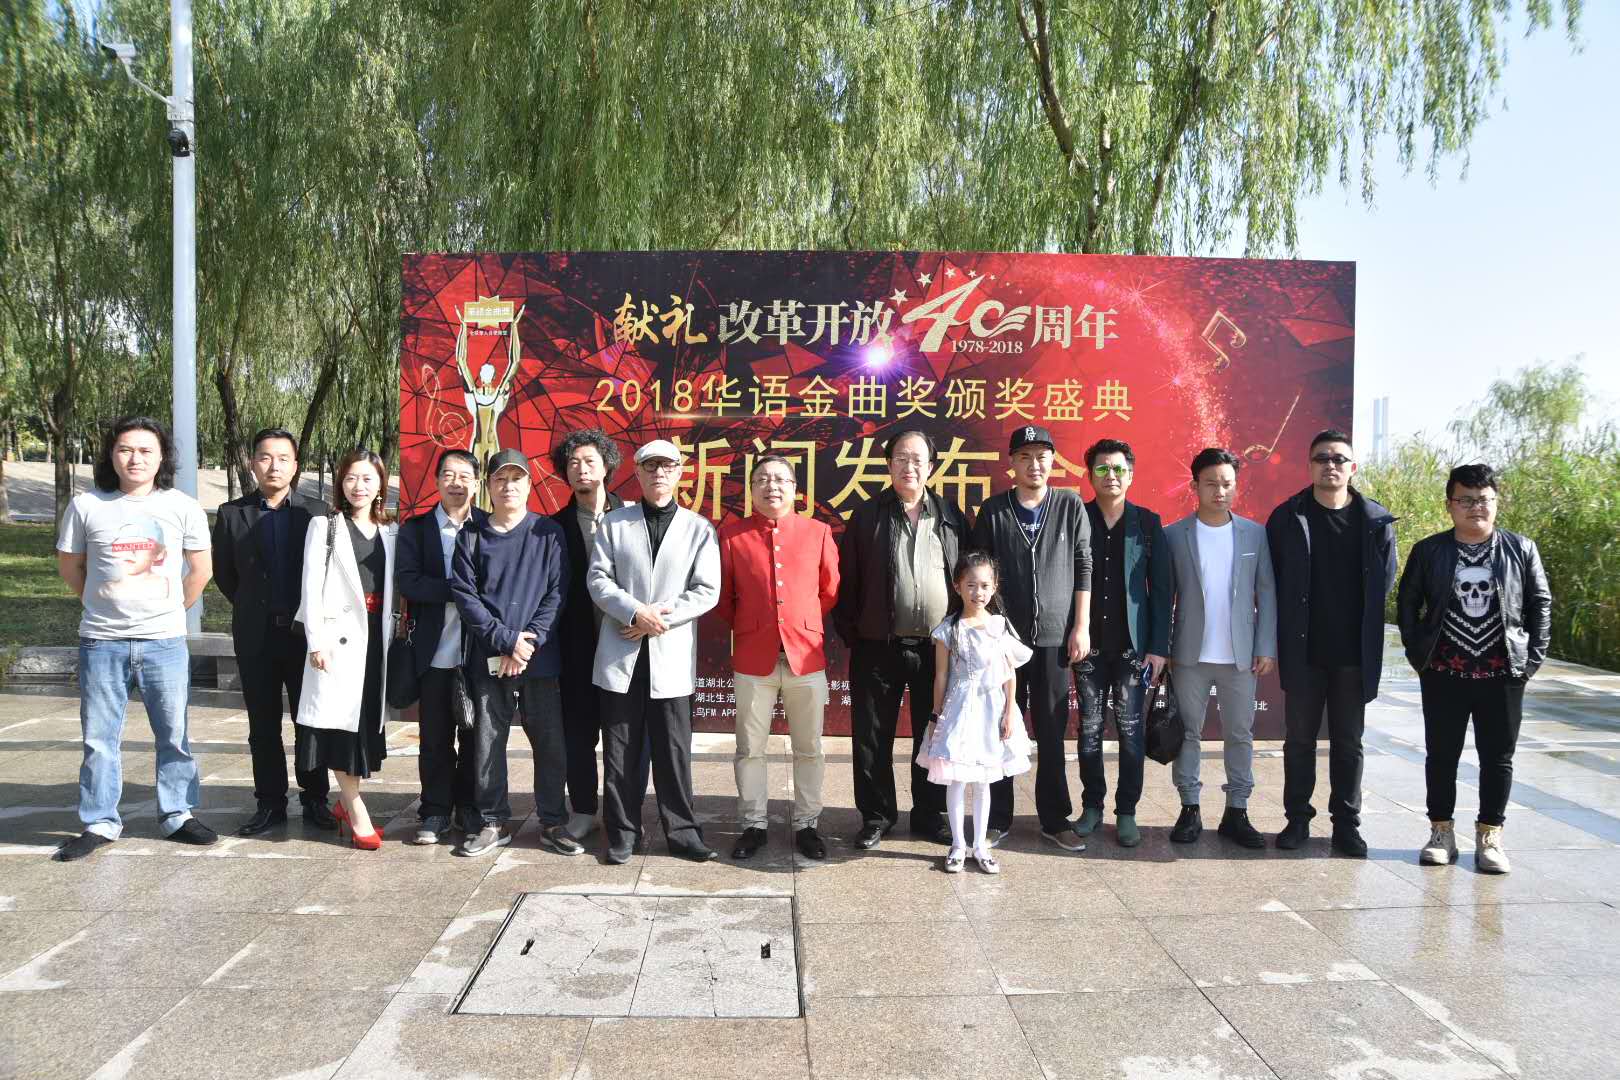 “2018华语金曲奖颁奖盛典”新闻发布会在武汉举行